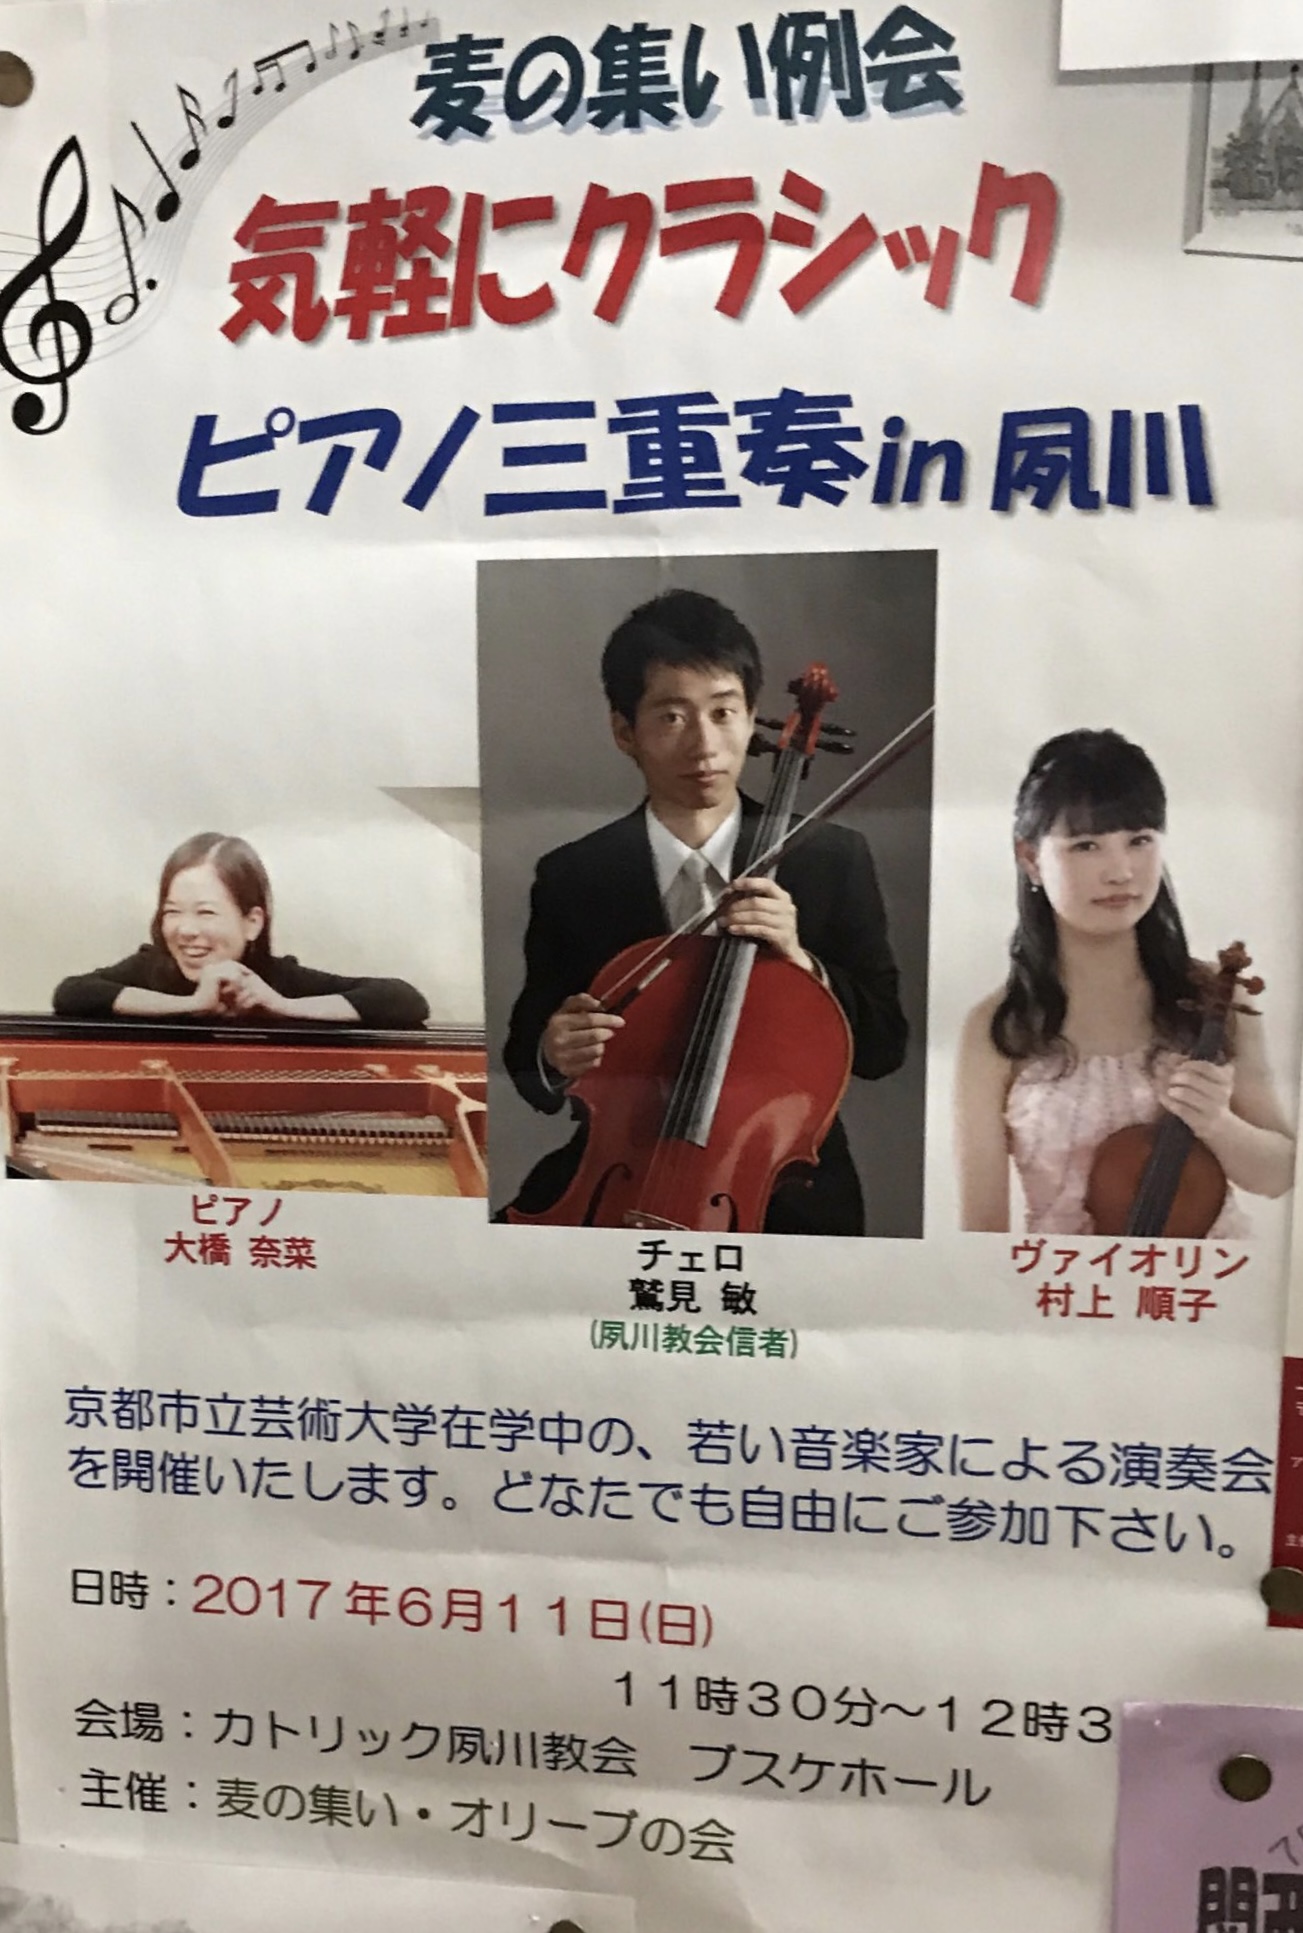 2017年6月11日 気軽にクラシック ピアノ三重奏 in 夙川